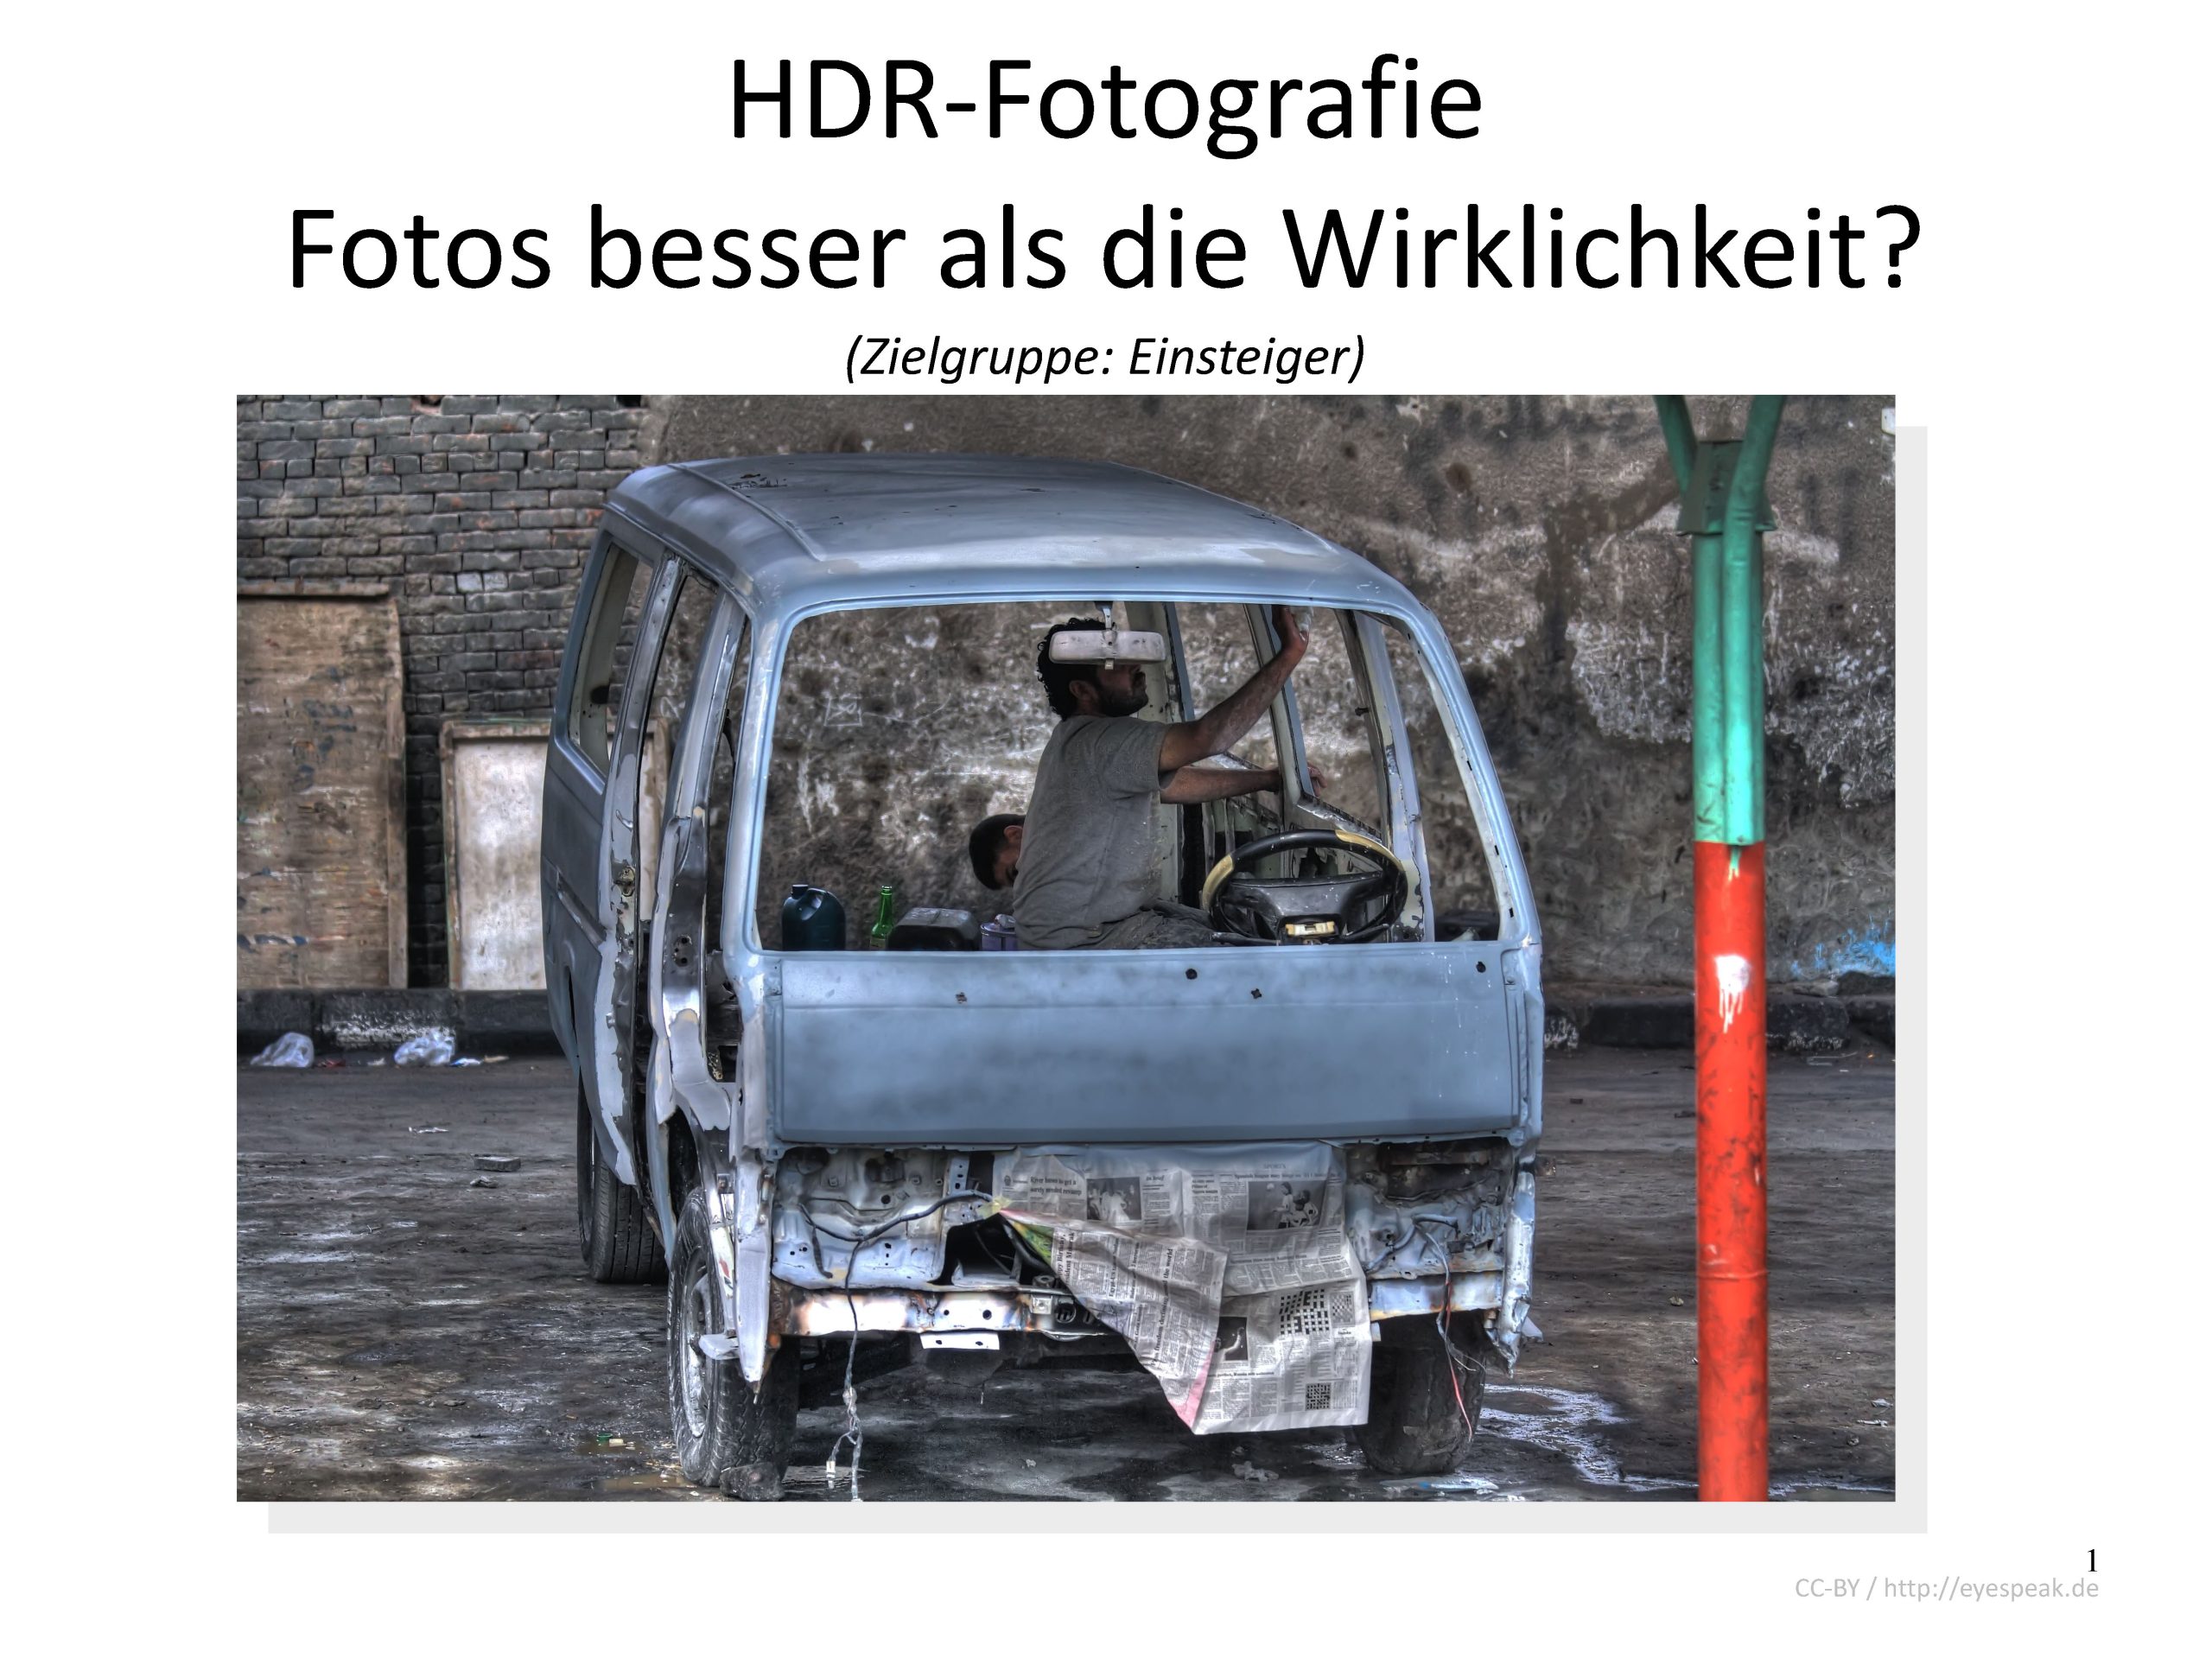 kleiner Vortrag über HDR-Fotografie frei Verfügbar (CC-BY)